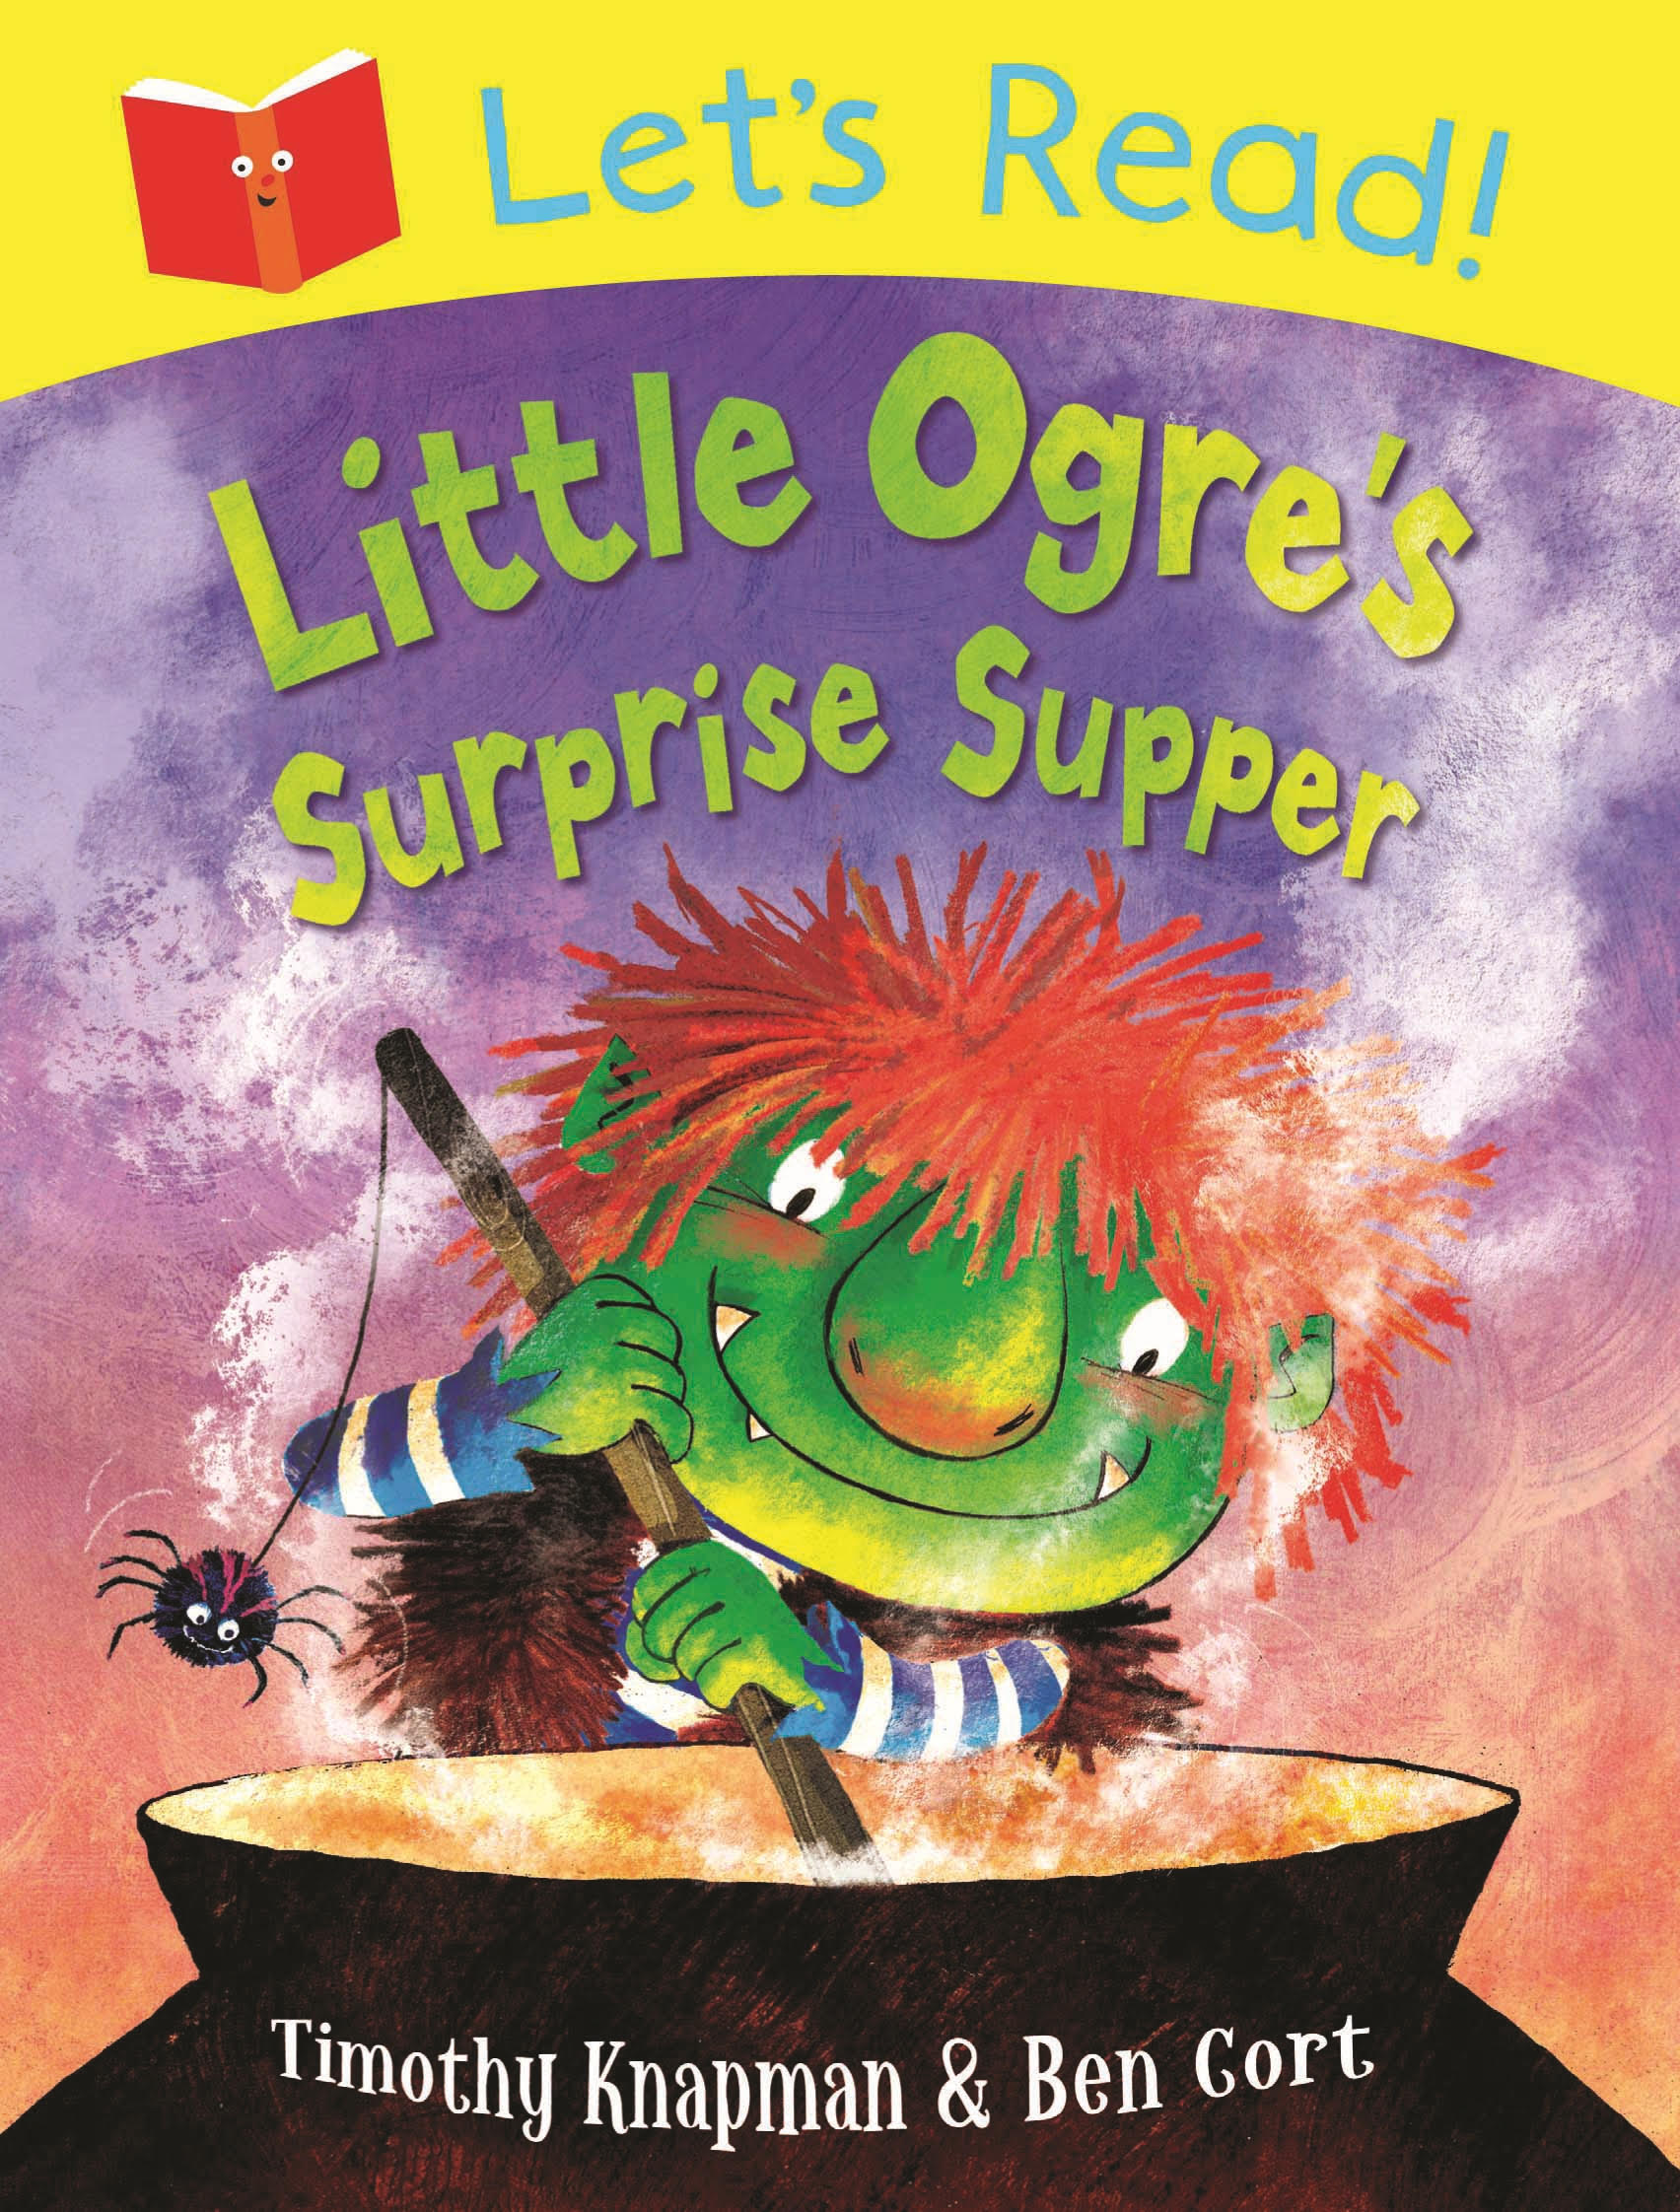 Let’s Read! Little Ogre’s Surprise Supper